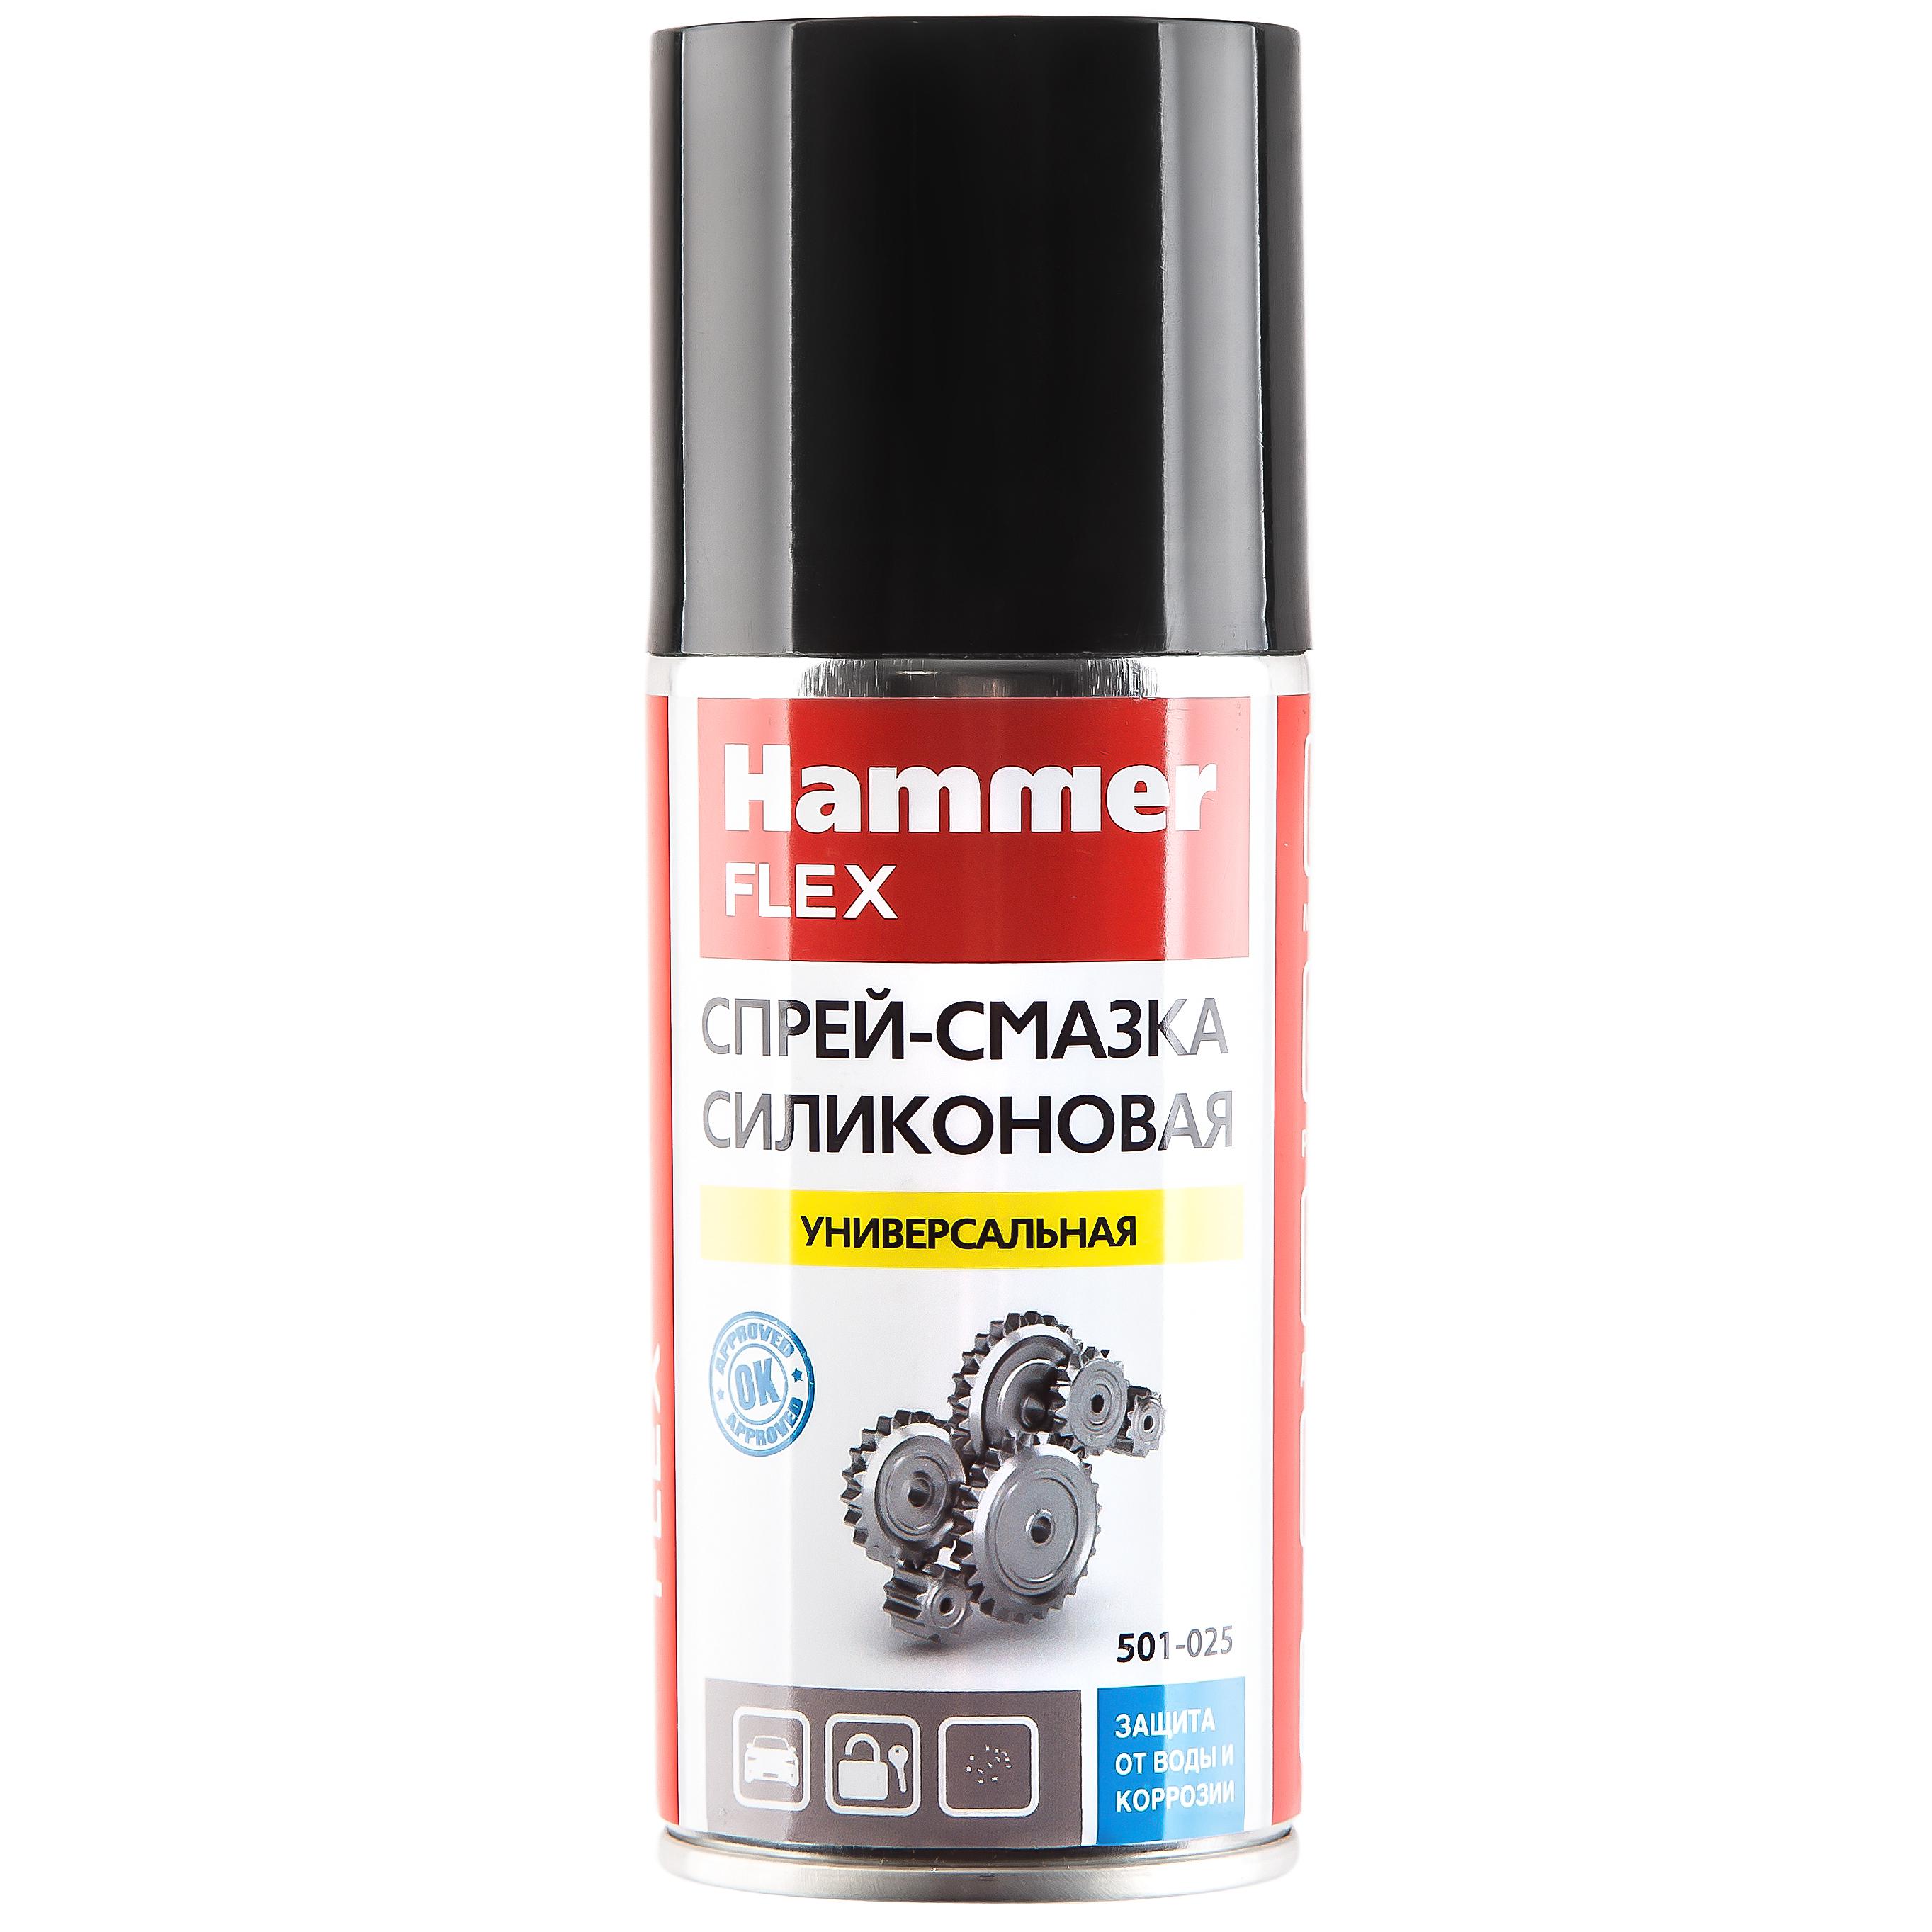 Смазка Hammer 501-025